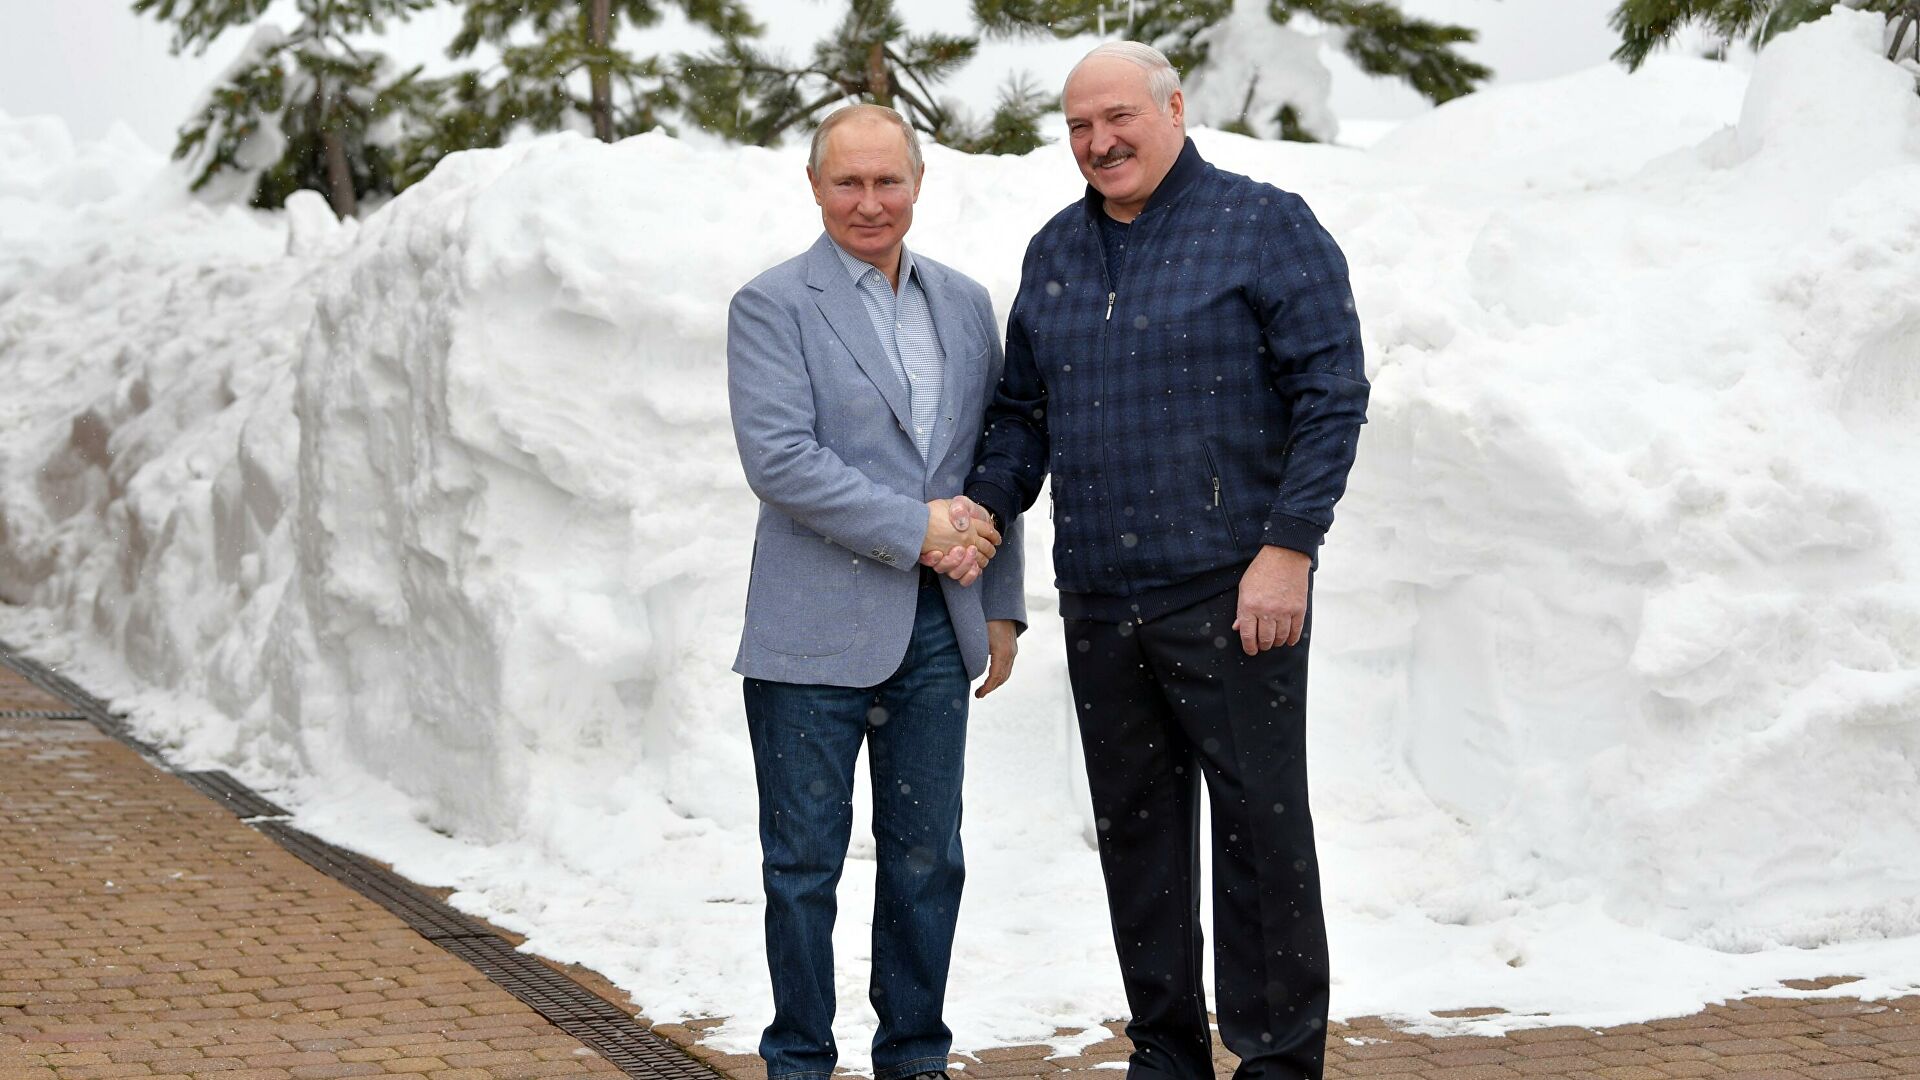 Стали известны подробности встречи Лукашенко и Путина